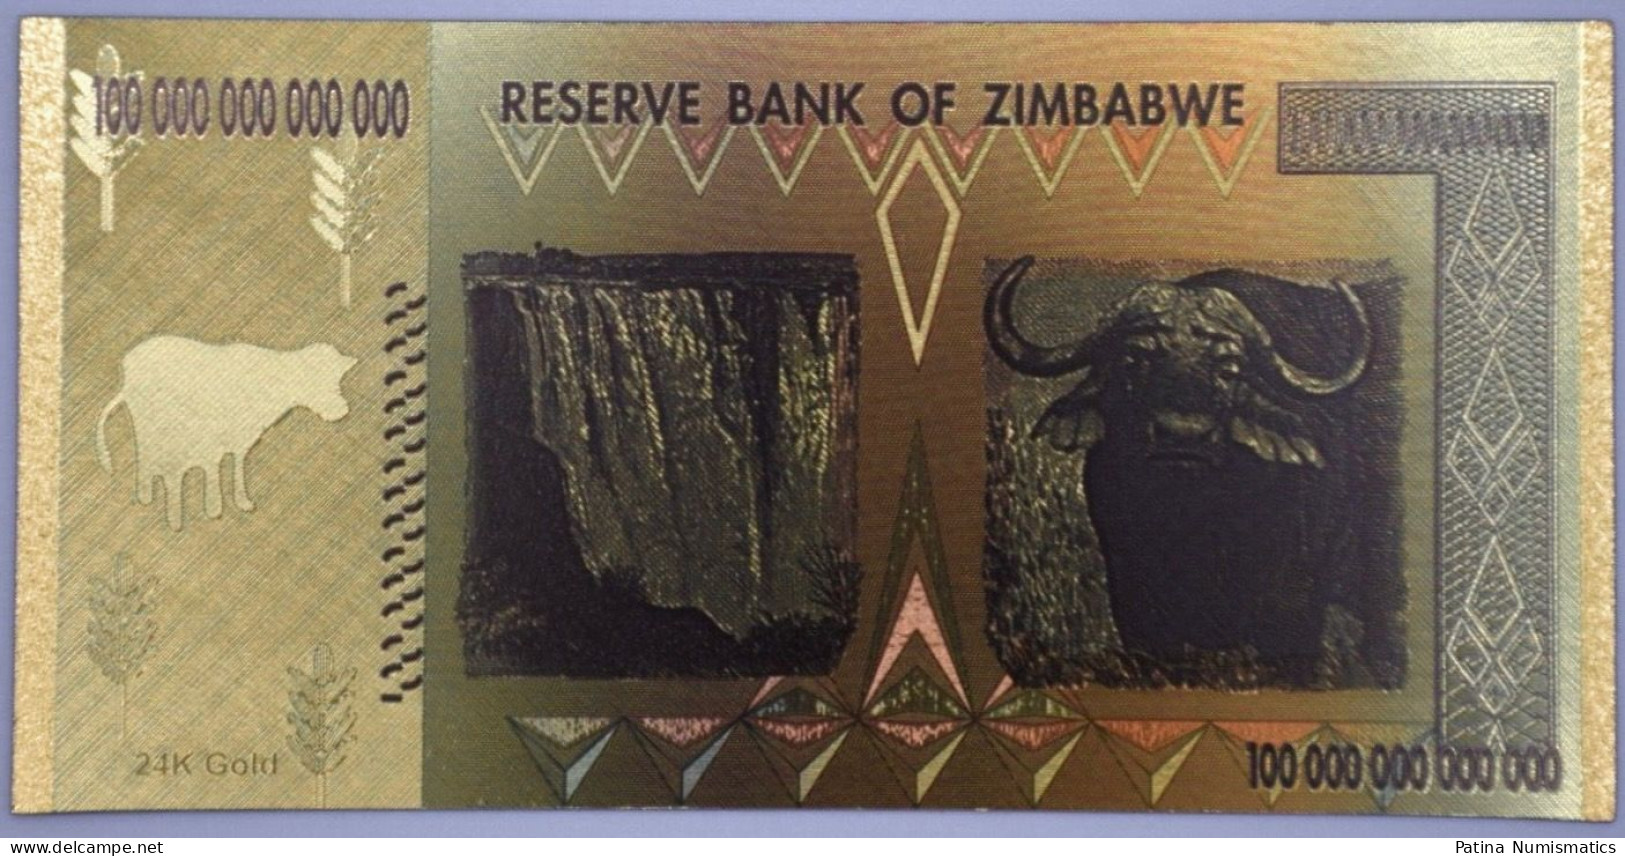 Zimbabwe $100 100 Trillion Dollars Gold Banknote Money Collection Novelty - Zimbabwe